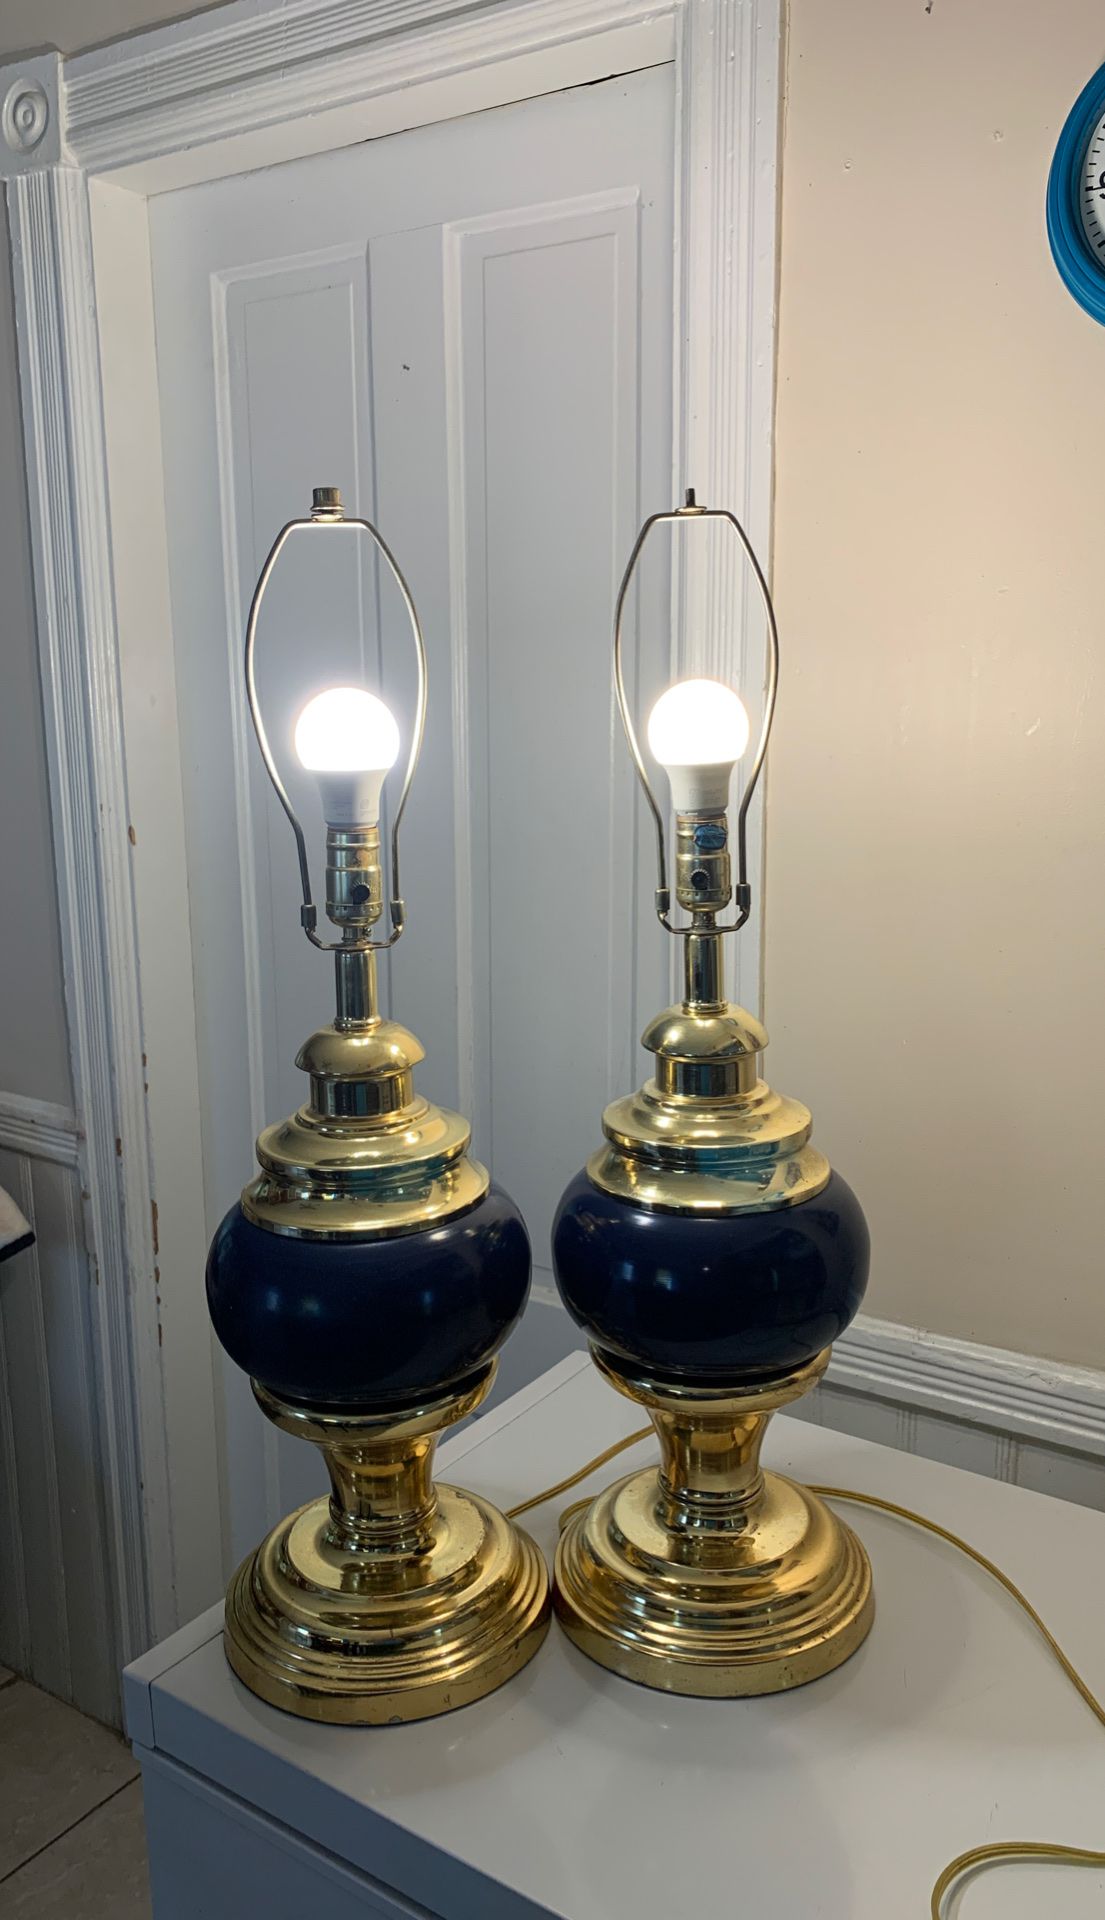 2 lamp